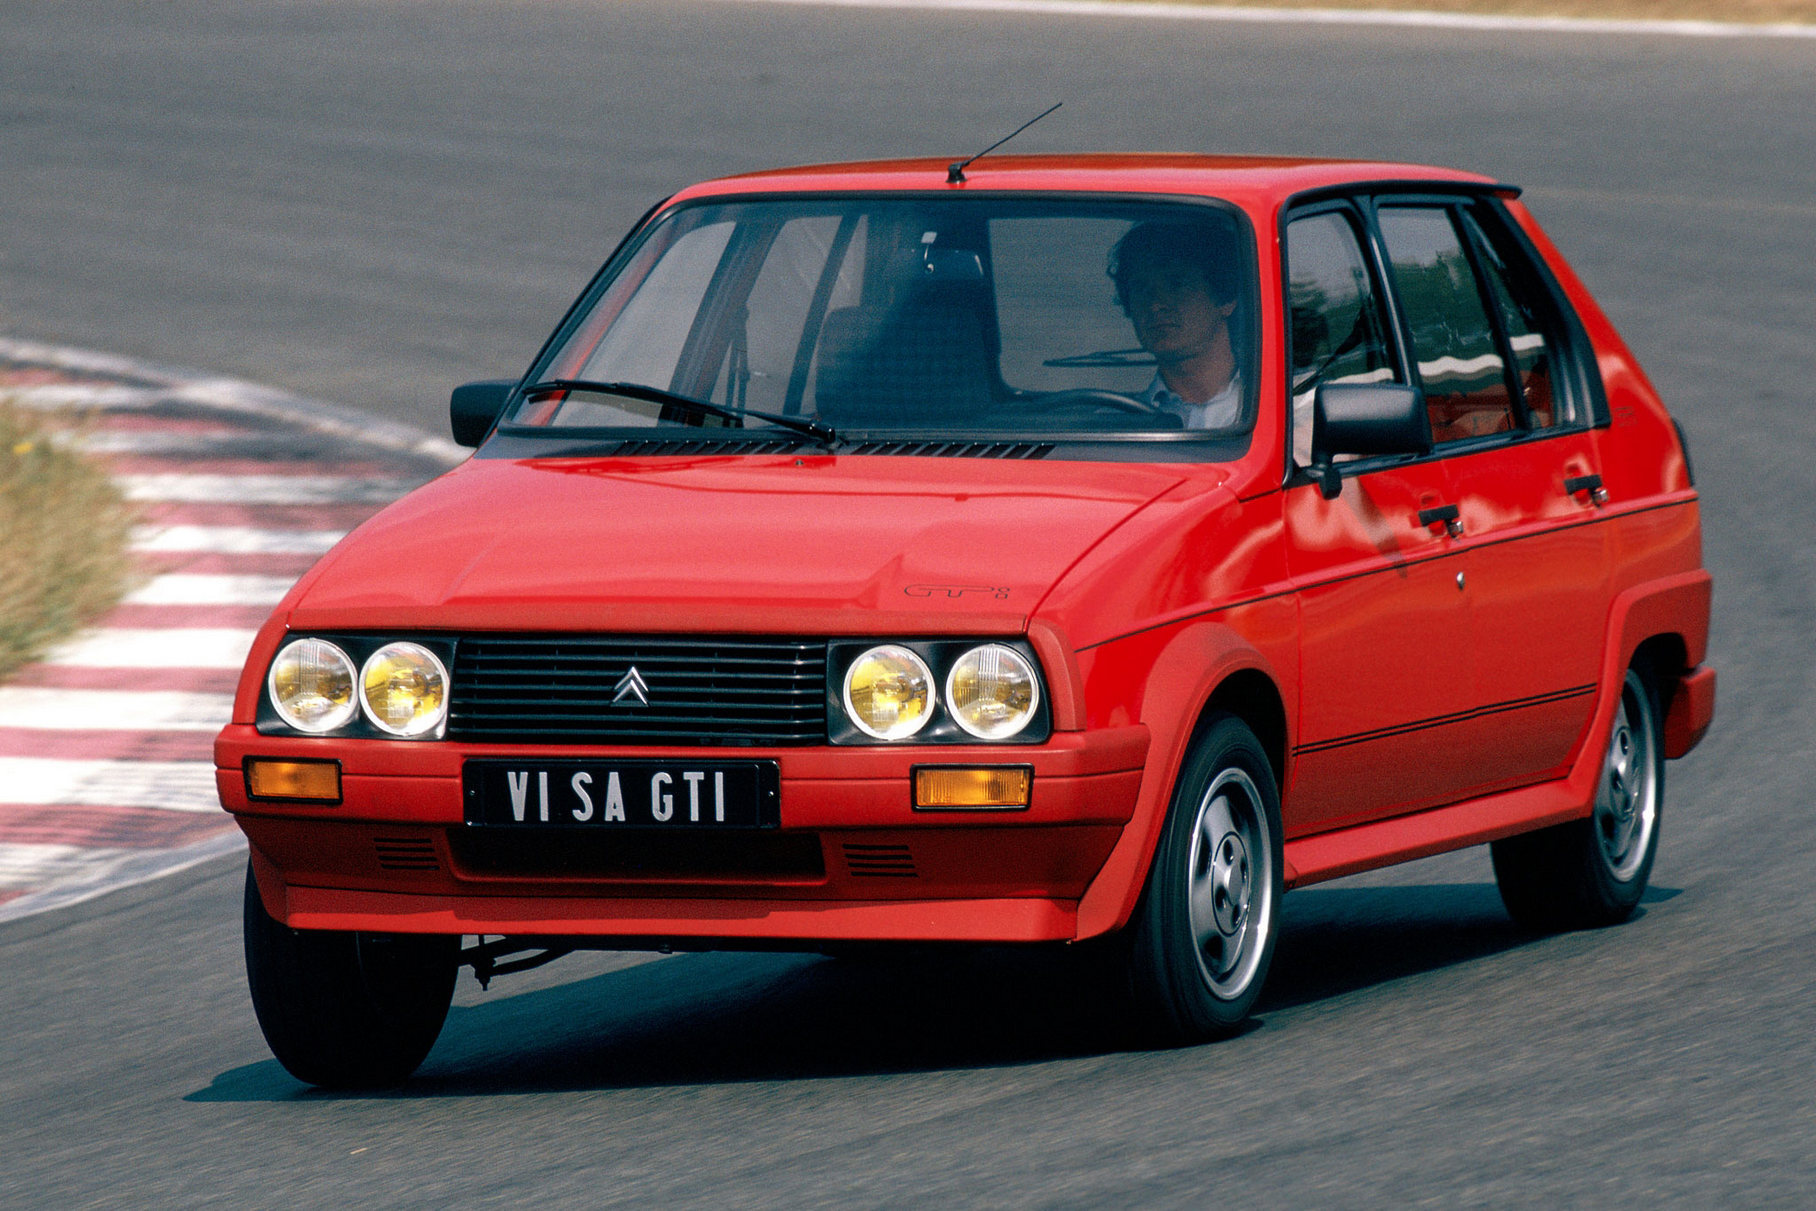 ###  Страшненький, простенький и очень недорогой: в общем, идеальный кандидат на роль первого автомобиля — таким был пятидверный хэтчбек Citroën Visa, выпущенный в 1978 году. Но уже под конец конвейерной жизни, в 1985-м, он получил 1,6-литровый мотор XU5J — точно такой же, как на Peugeot 205 GTI. Обвес в спортивном духе не мог превратить гадкого утёнка в прекрасного лебедя... Но говорят, что грамотно доработанное шасси и весёленький моторчик вкупе с крохотным весом (всего 870 килограммов) делало поездки на Ситроенчике очень увлекательными! Машина пользовалась любовью французской молодёжи — правда, за рубежом популярности не снискала. Поэтому и оказалась в нашей подборке.